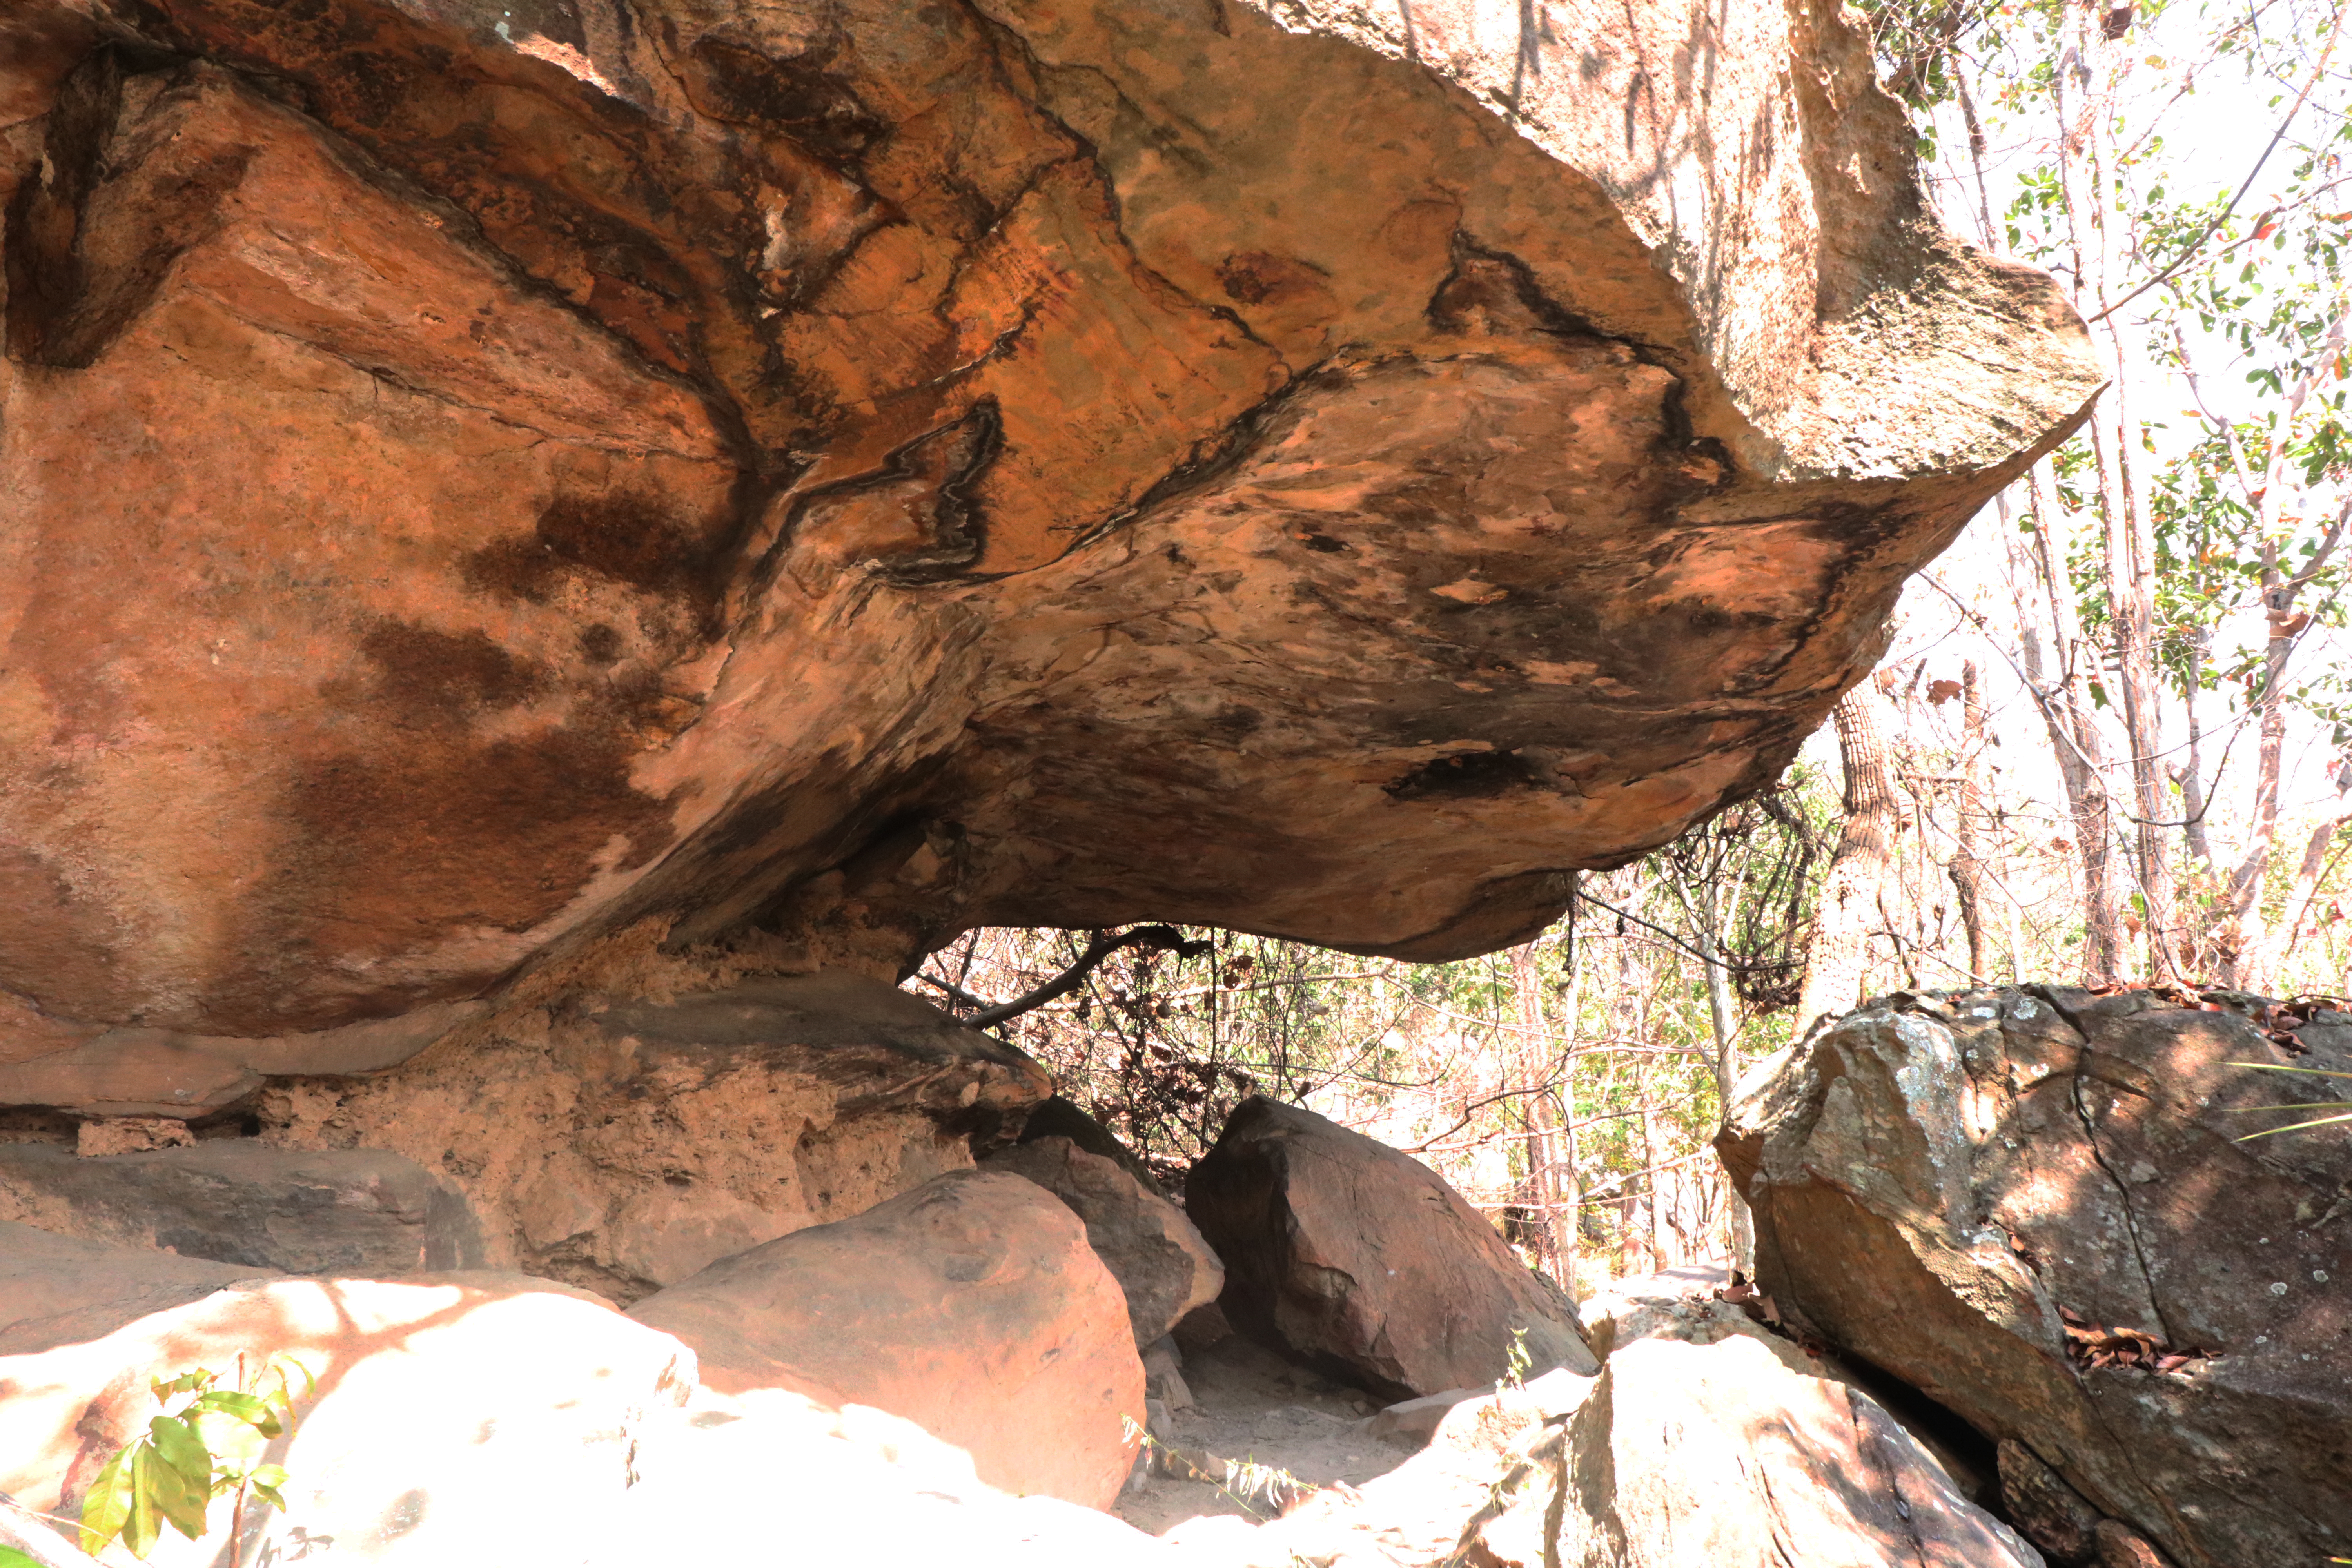 สำรวจแหล่งภาพเขียนสีถ้ำสบไถ ๑ ในเขตอุทยานแห่งชาติน้ำพอง จังหวัดขอนแก่น